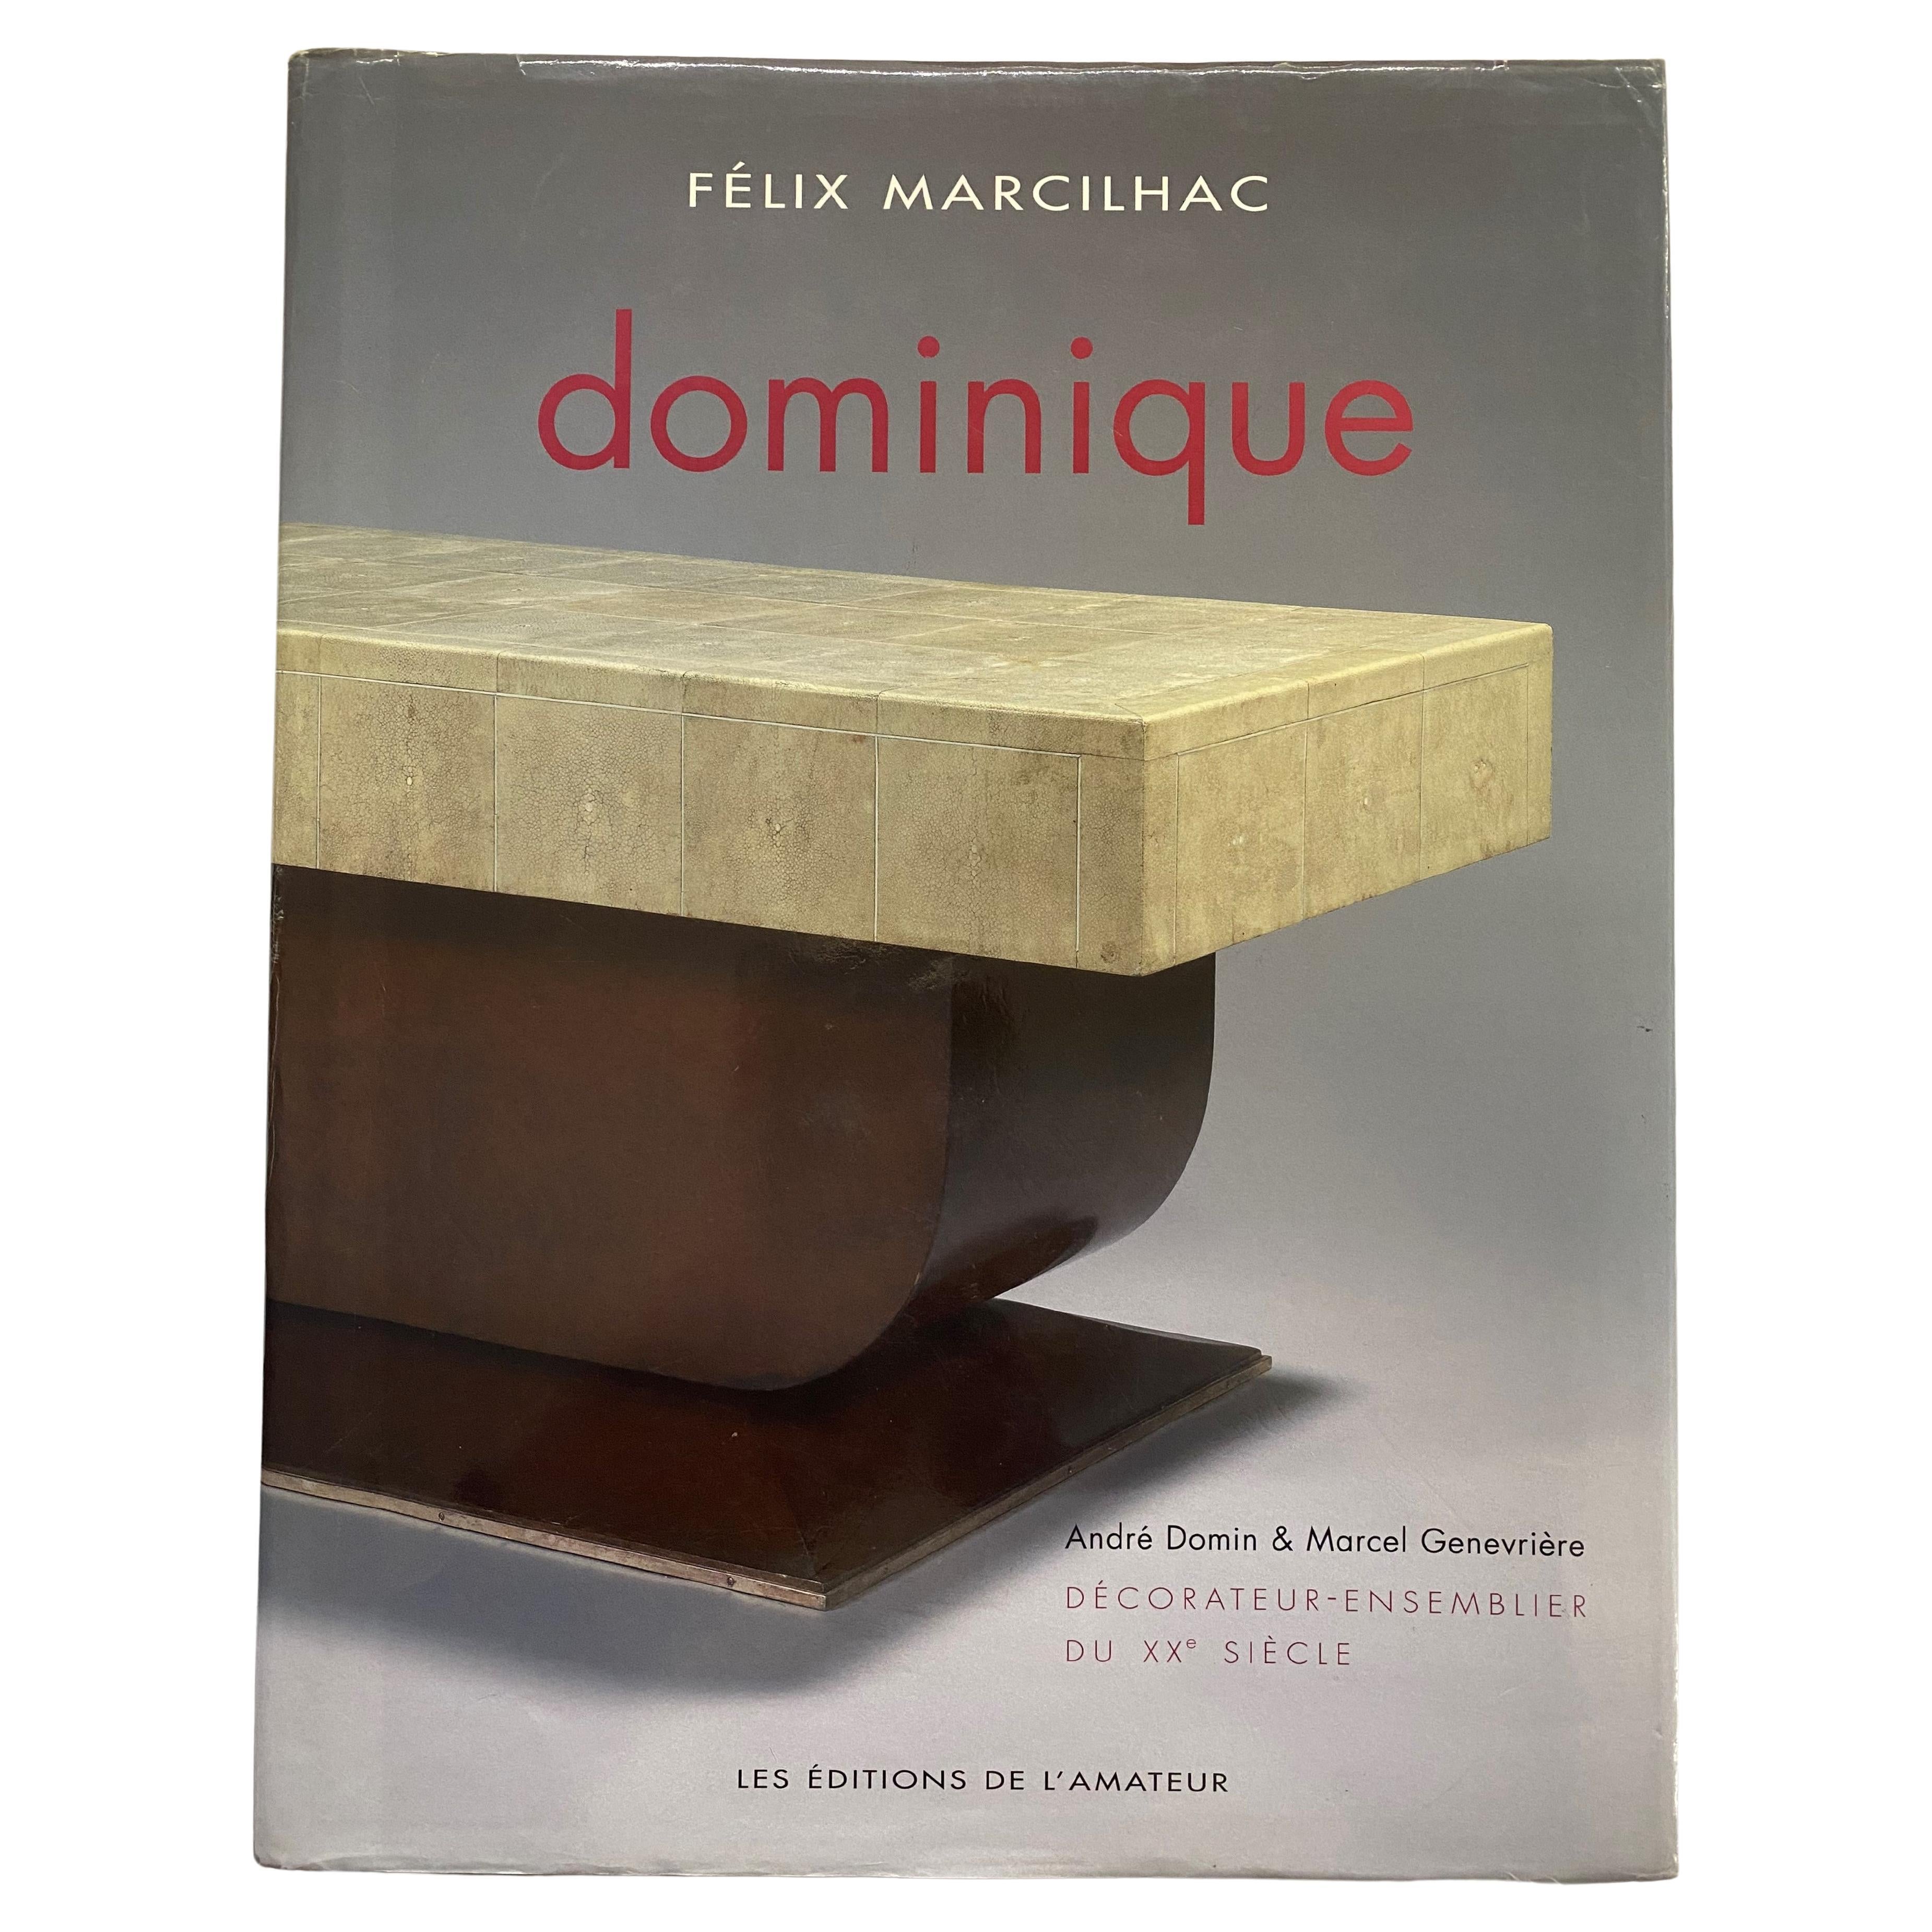 Dominique: Decorateur-Ensemblier Du XX Siecle by Felix Marcilhac (Book)